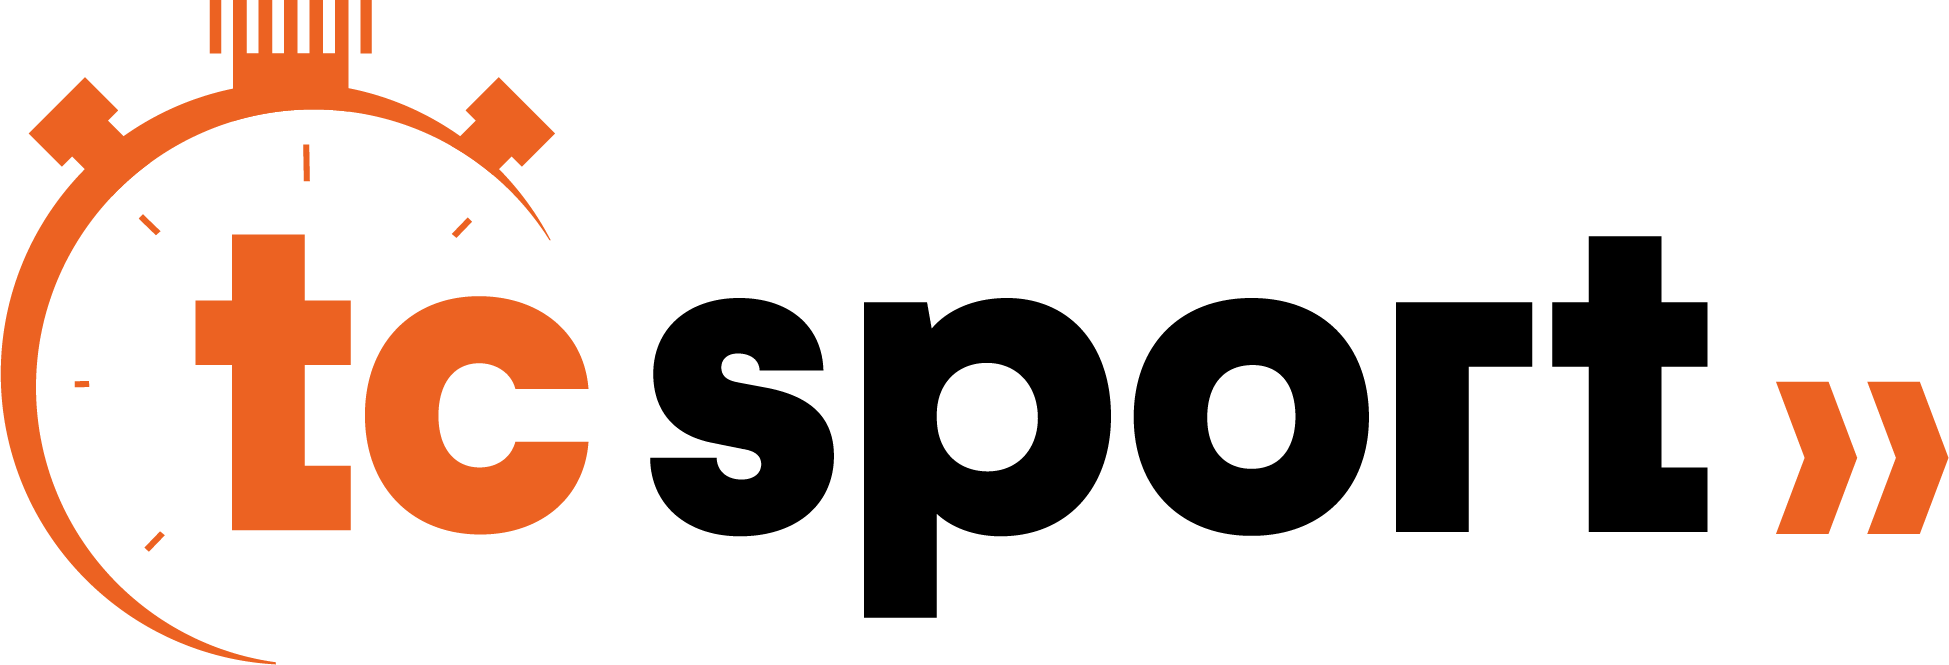 les formules logo